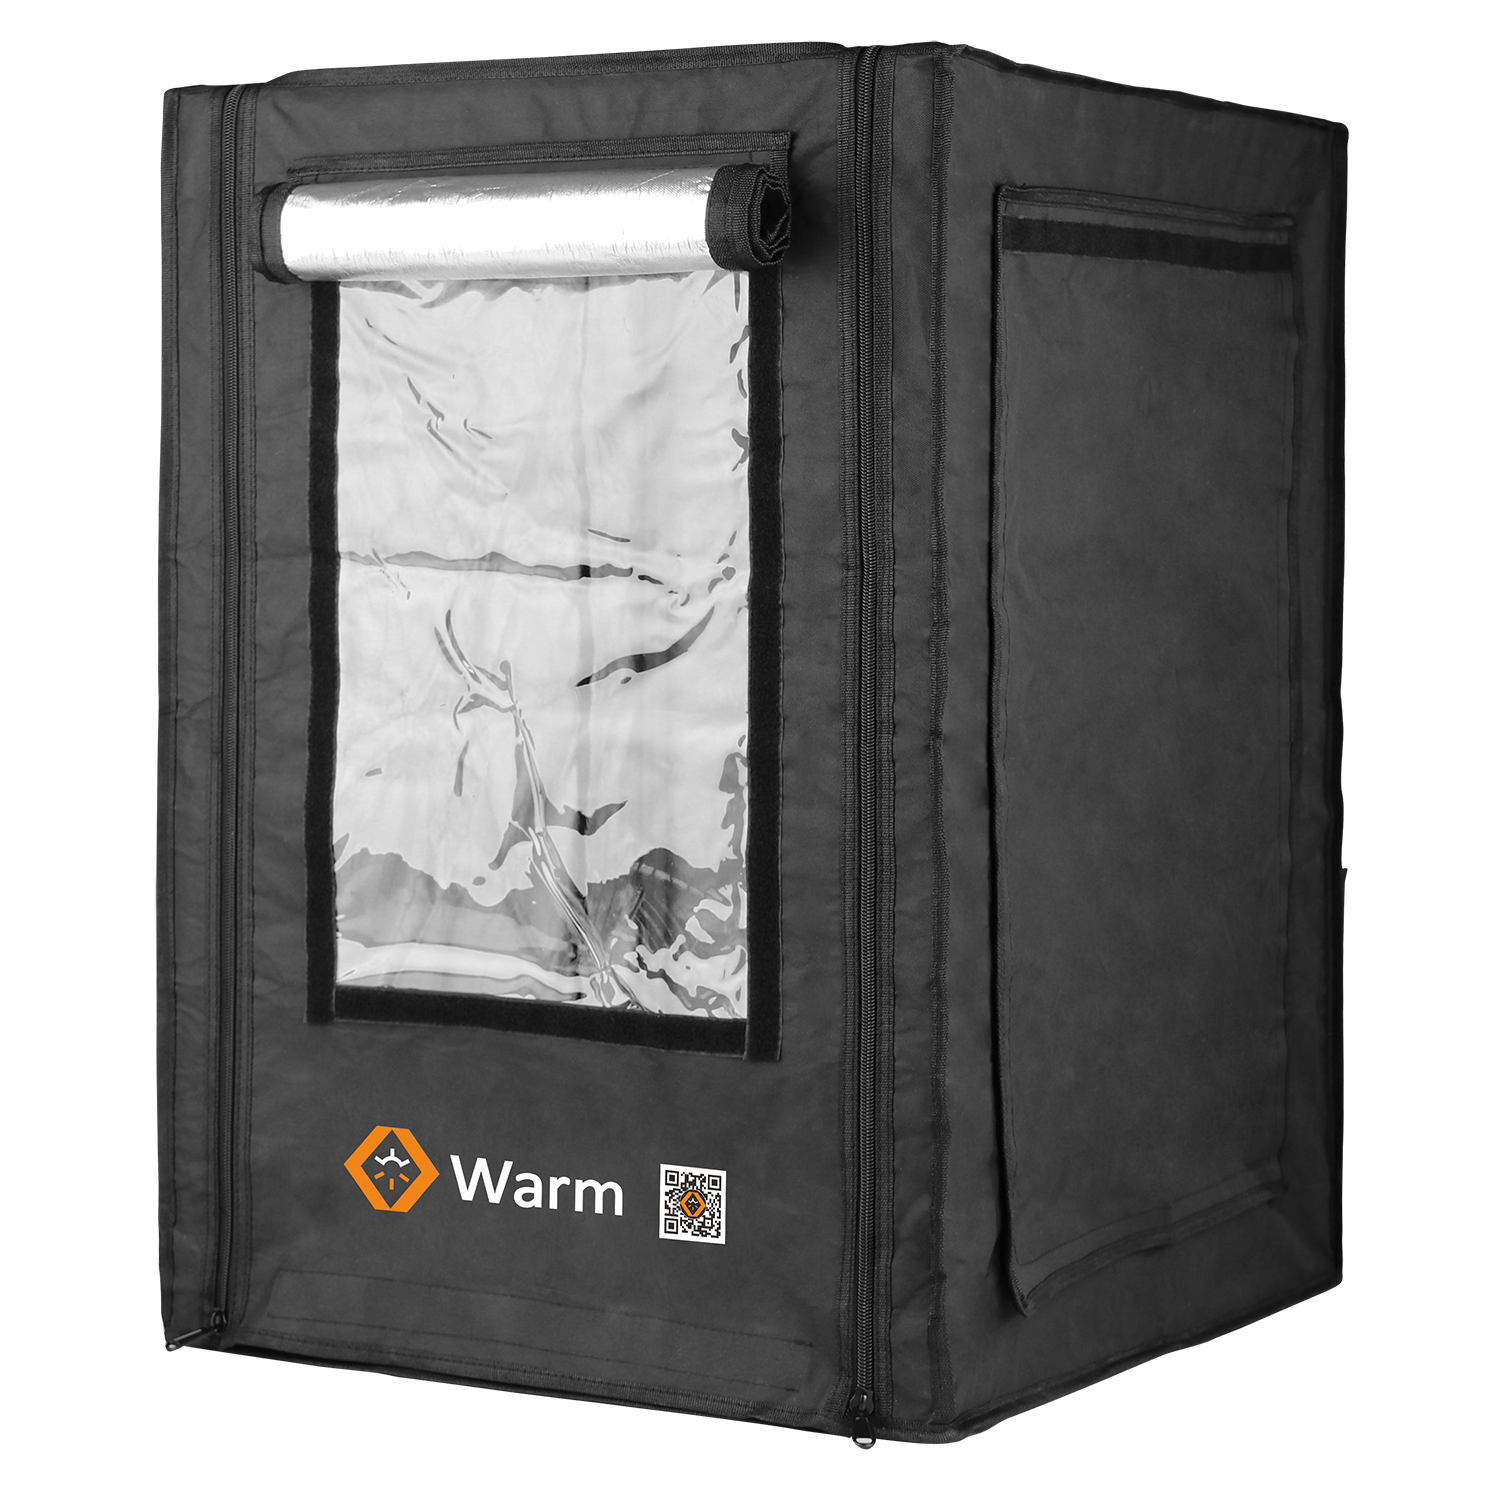 Pro 3D-Druckergehäuse, warm halten, flammhemmend, vollständige Abdeckung und ein Studio, Warm Pro
